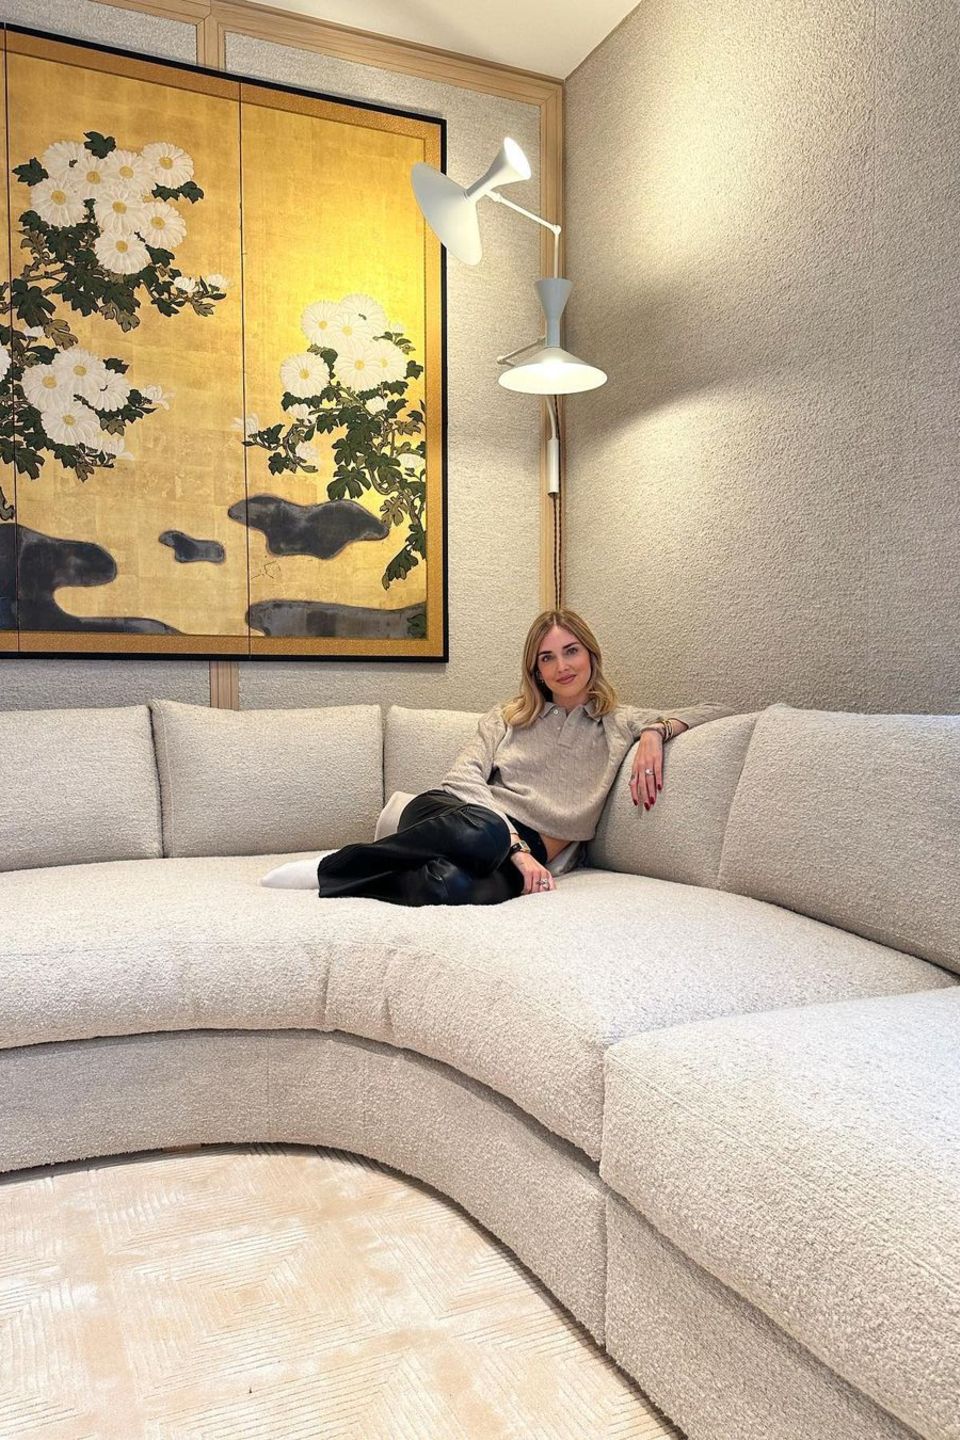 Fashion-Influencerin und Reality-TV-Star Chiara Ferragni freut sich schon, demnächst in ihr neues Luxusdomizil in Mailand einziehen zu können. Genug Platz gibt die cremefarbene Couch auf jeden Fall her.